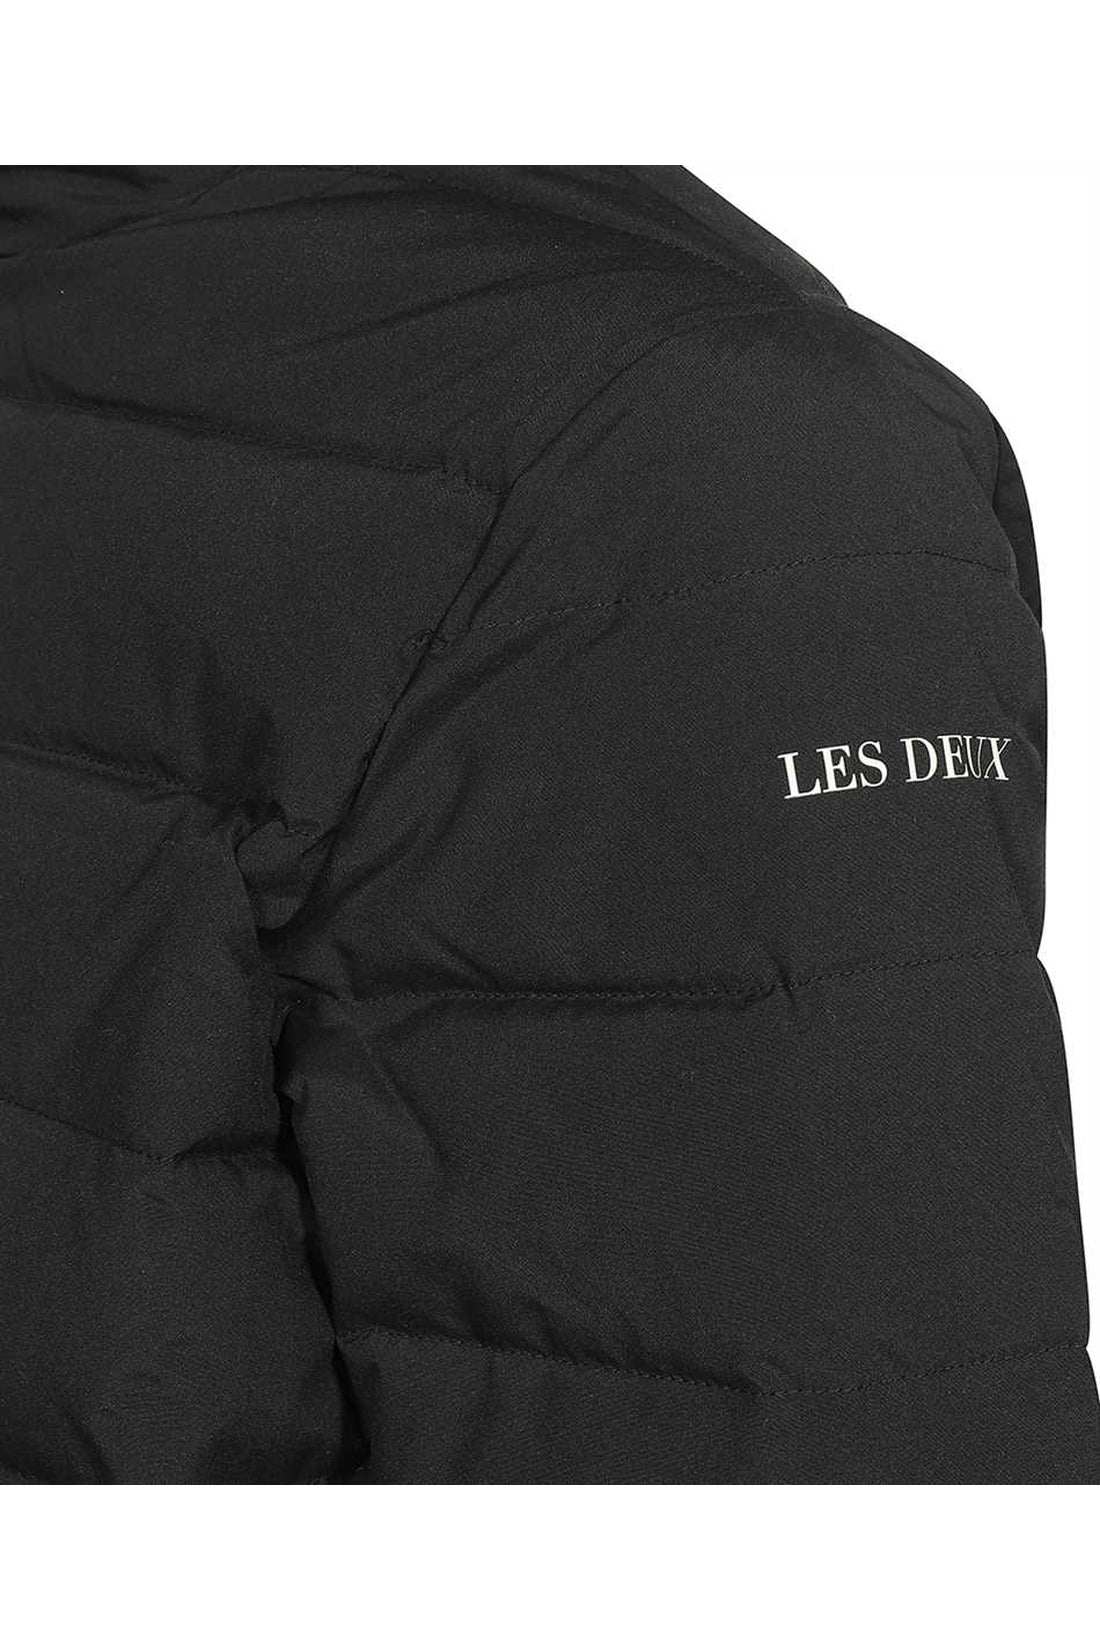 Les Deux-OUTLET-SALE-Full zip down jacket-ARCHIVIST